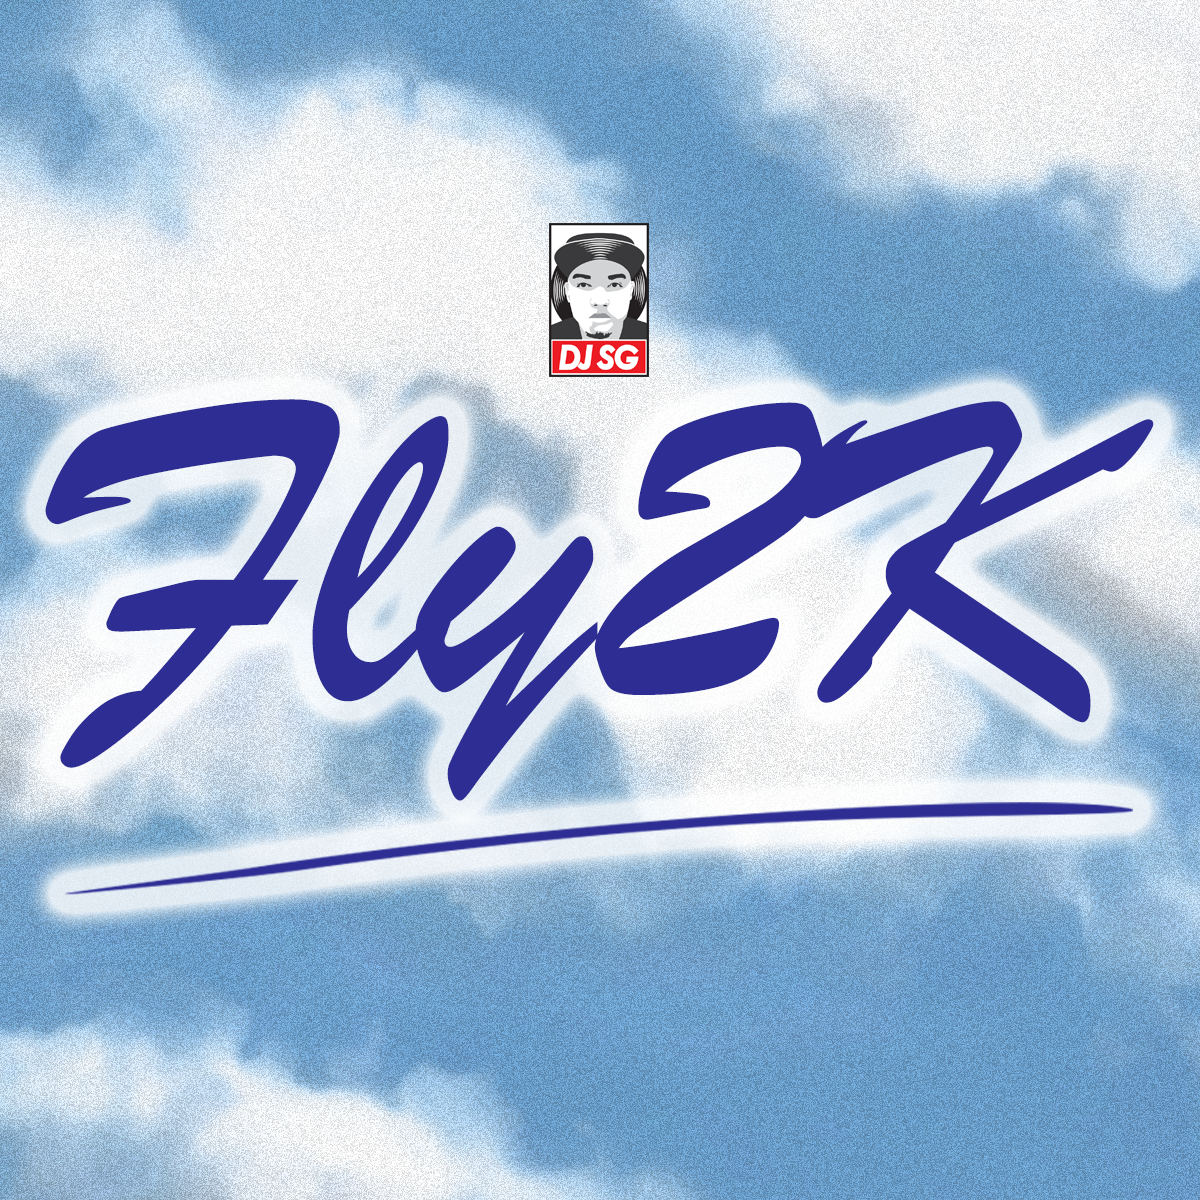 DJ SG FLY2K